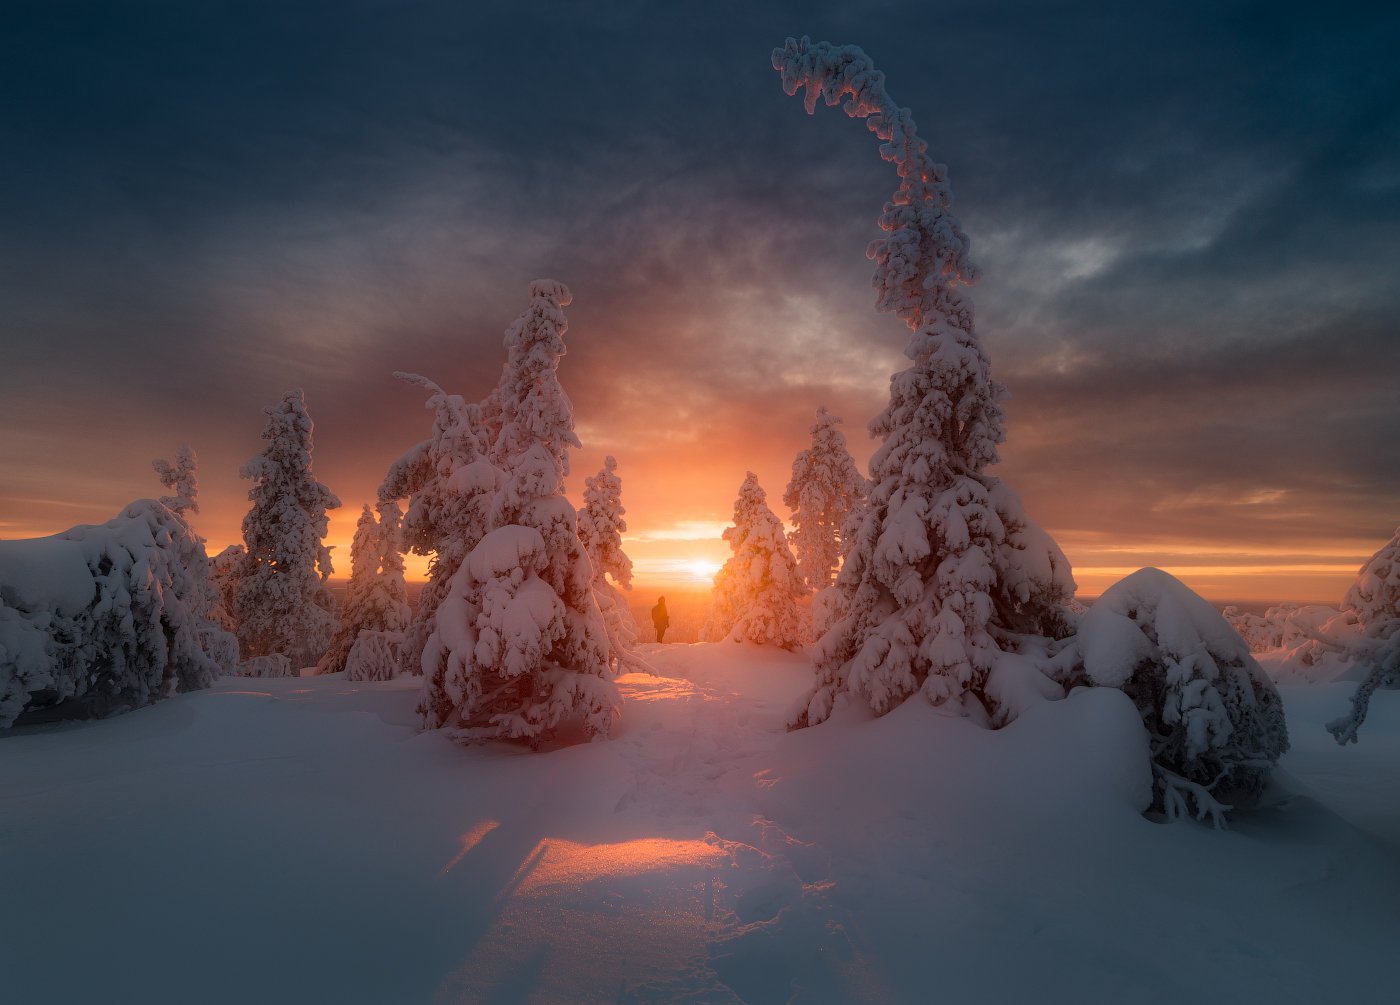 зима, снег, елка, вечер, закат, небо, солнце, финляндия, Cтанислав Малых